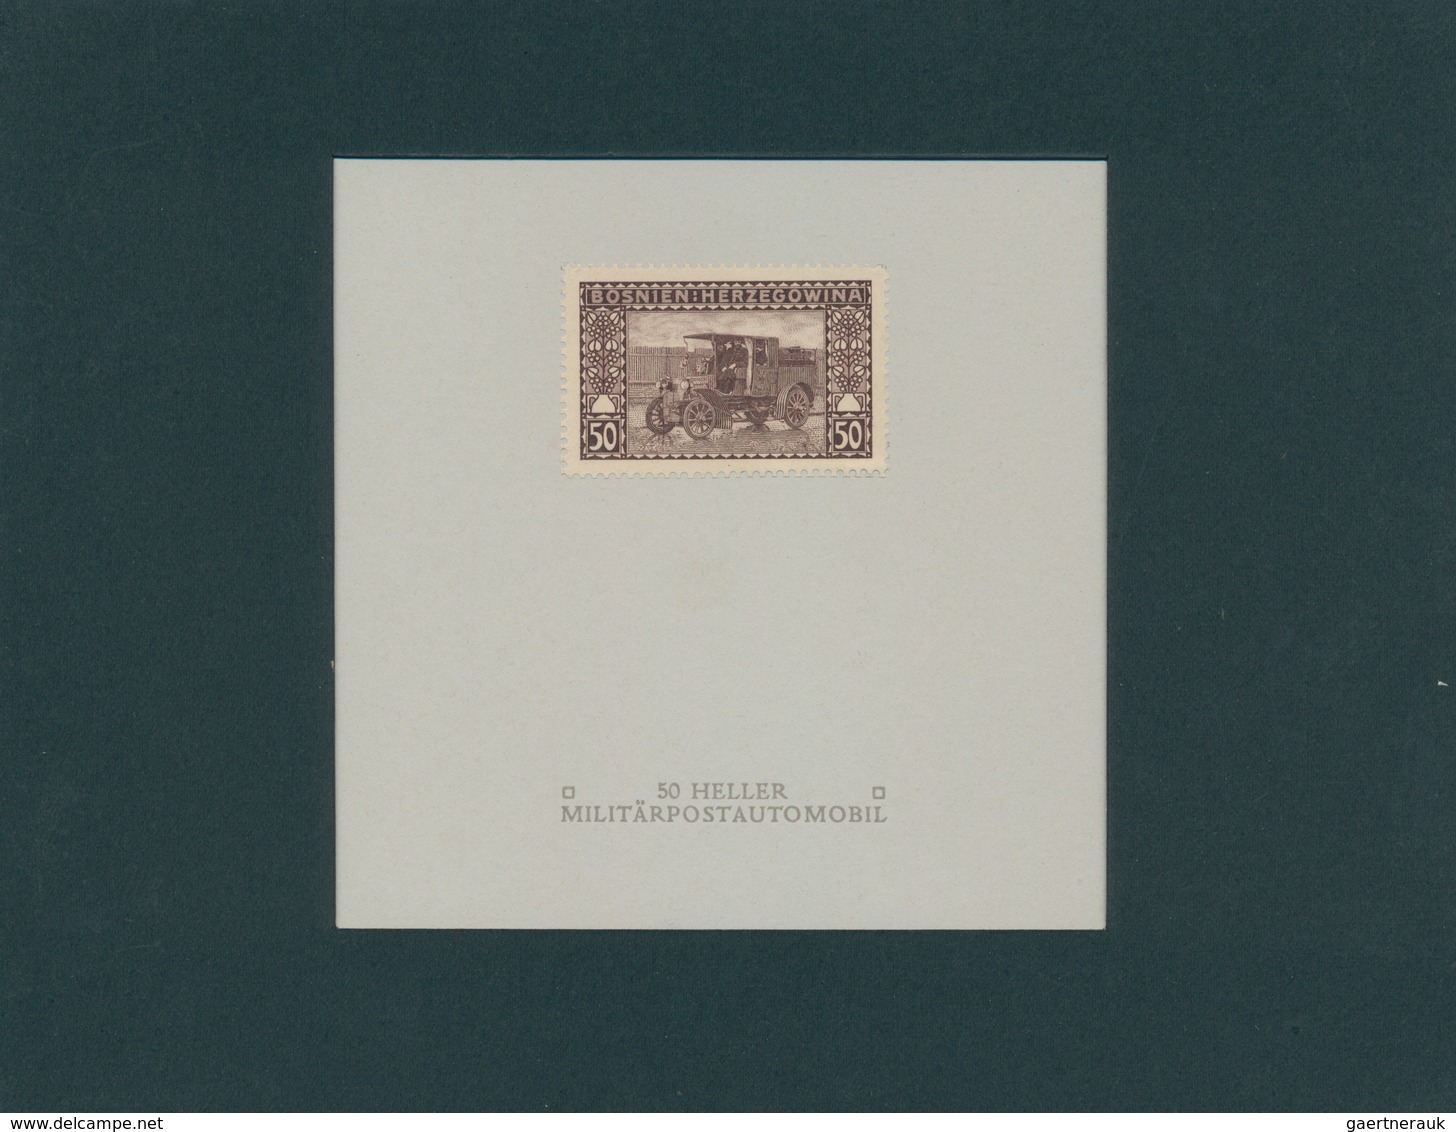 Bosnien und Herzegowina (Österreich 1879/1918): 1906, Freimarken, 1 H. bis 5 Kr, komplette Serie von